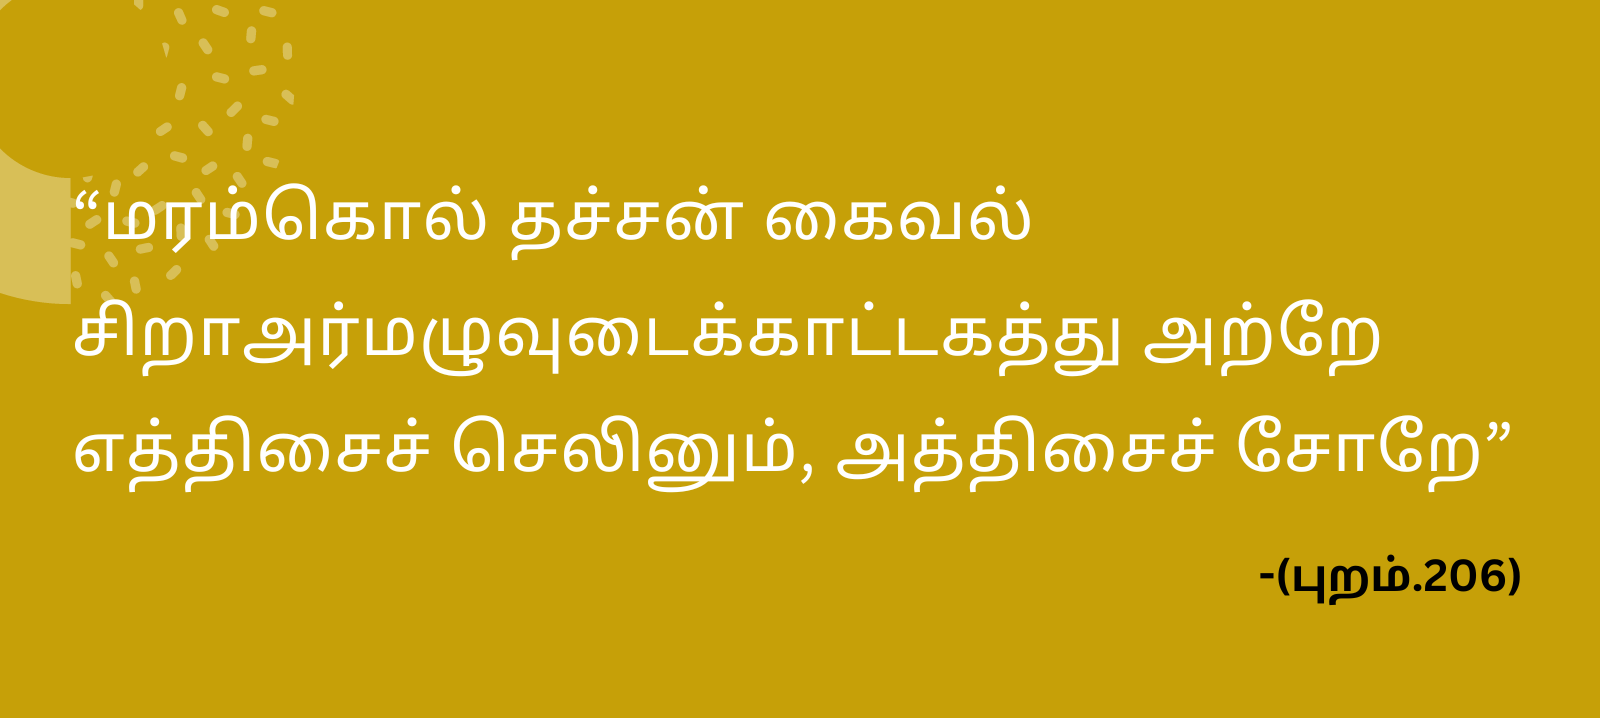 Avvaiyar in Tamil